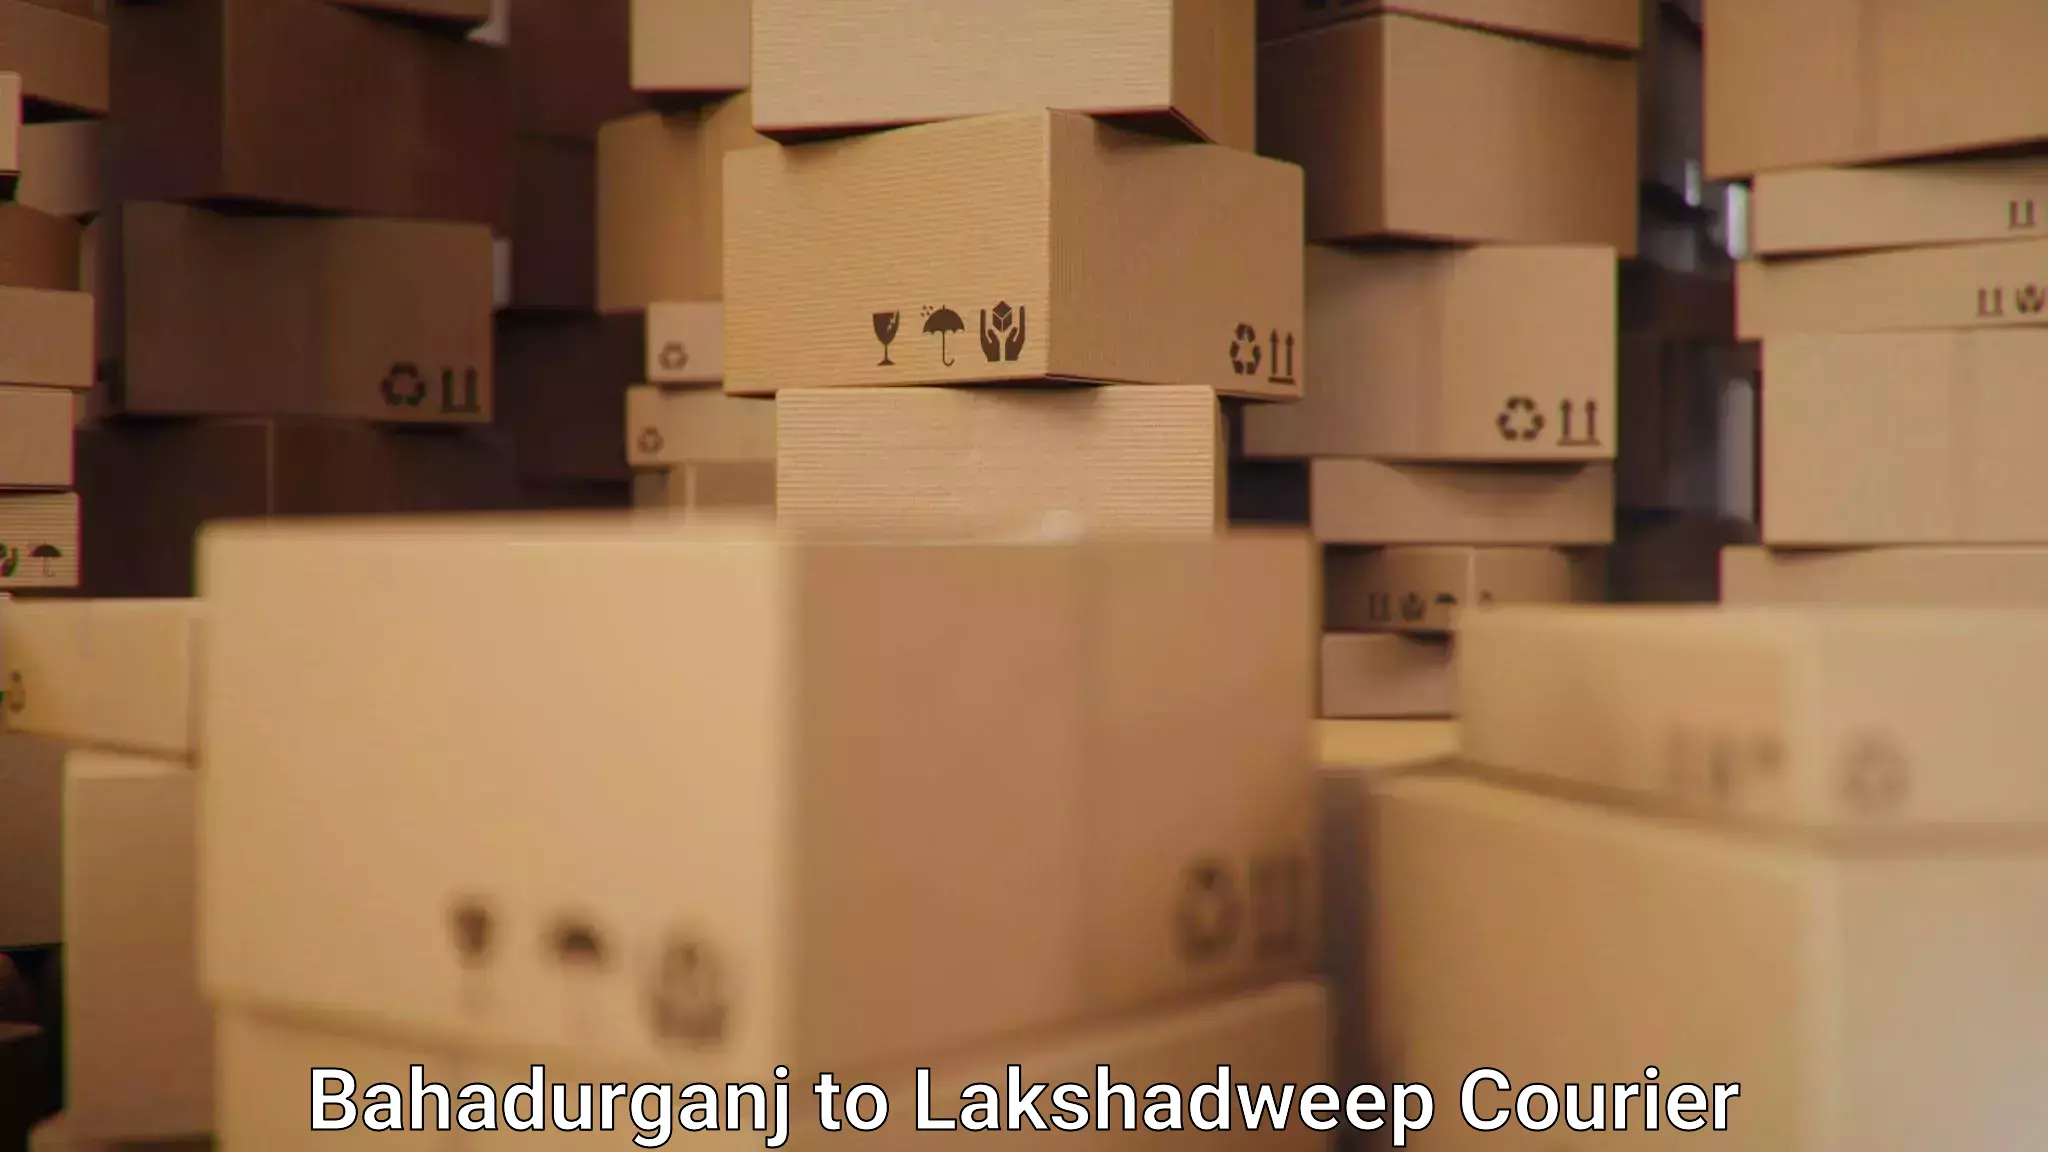 Global parcel delivery Bahadurganj to Lakshadweep